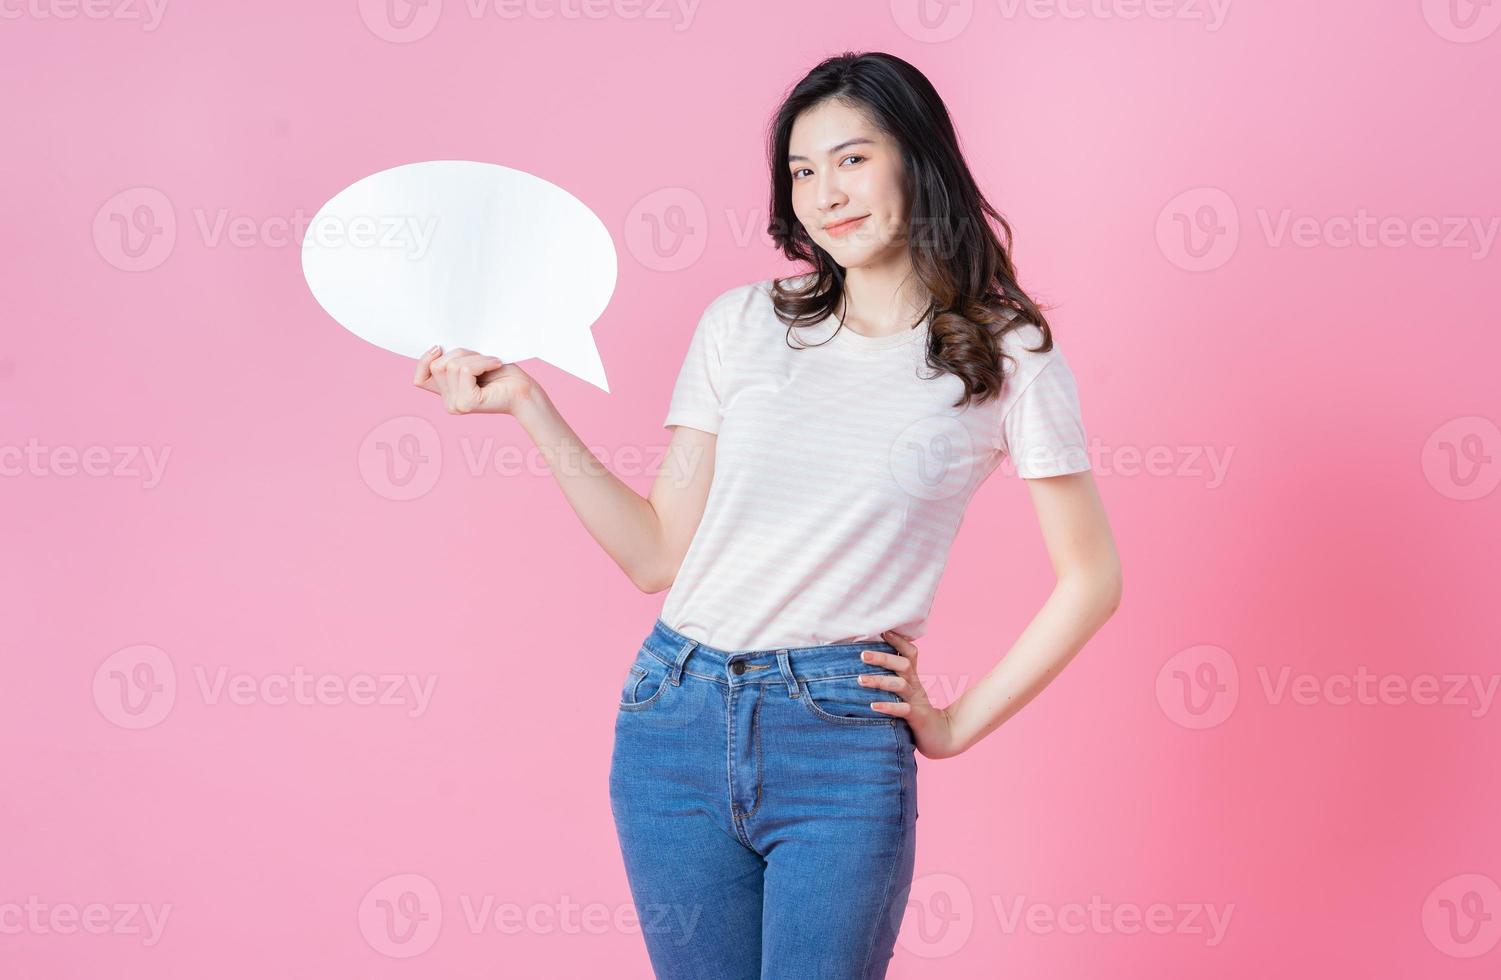 afbeelding van een jonge aziatische vrouw met een berichtbel op de linkachtergrond foto